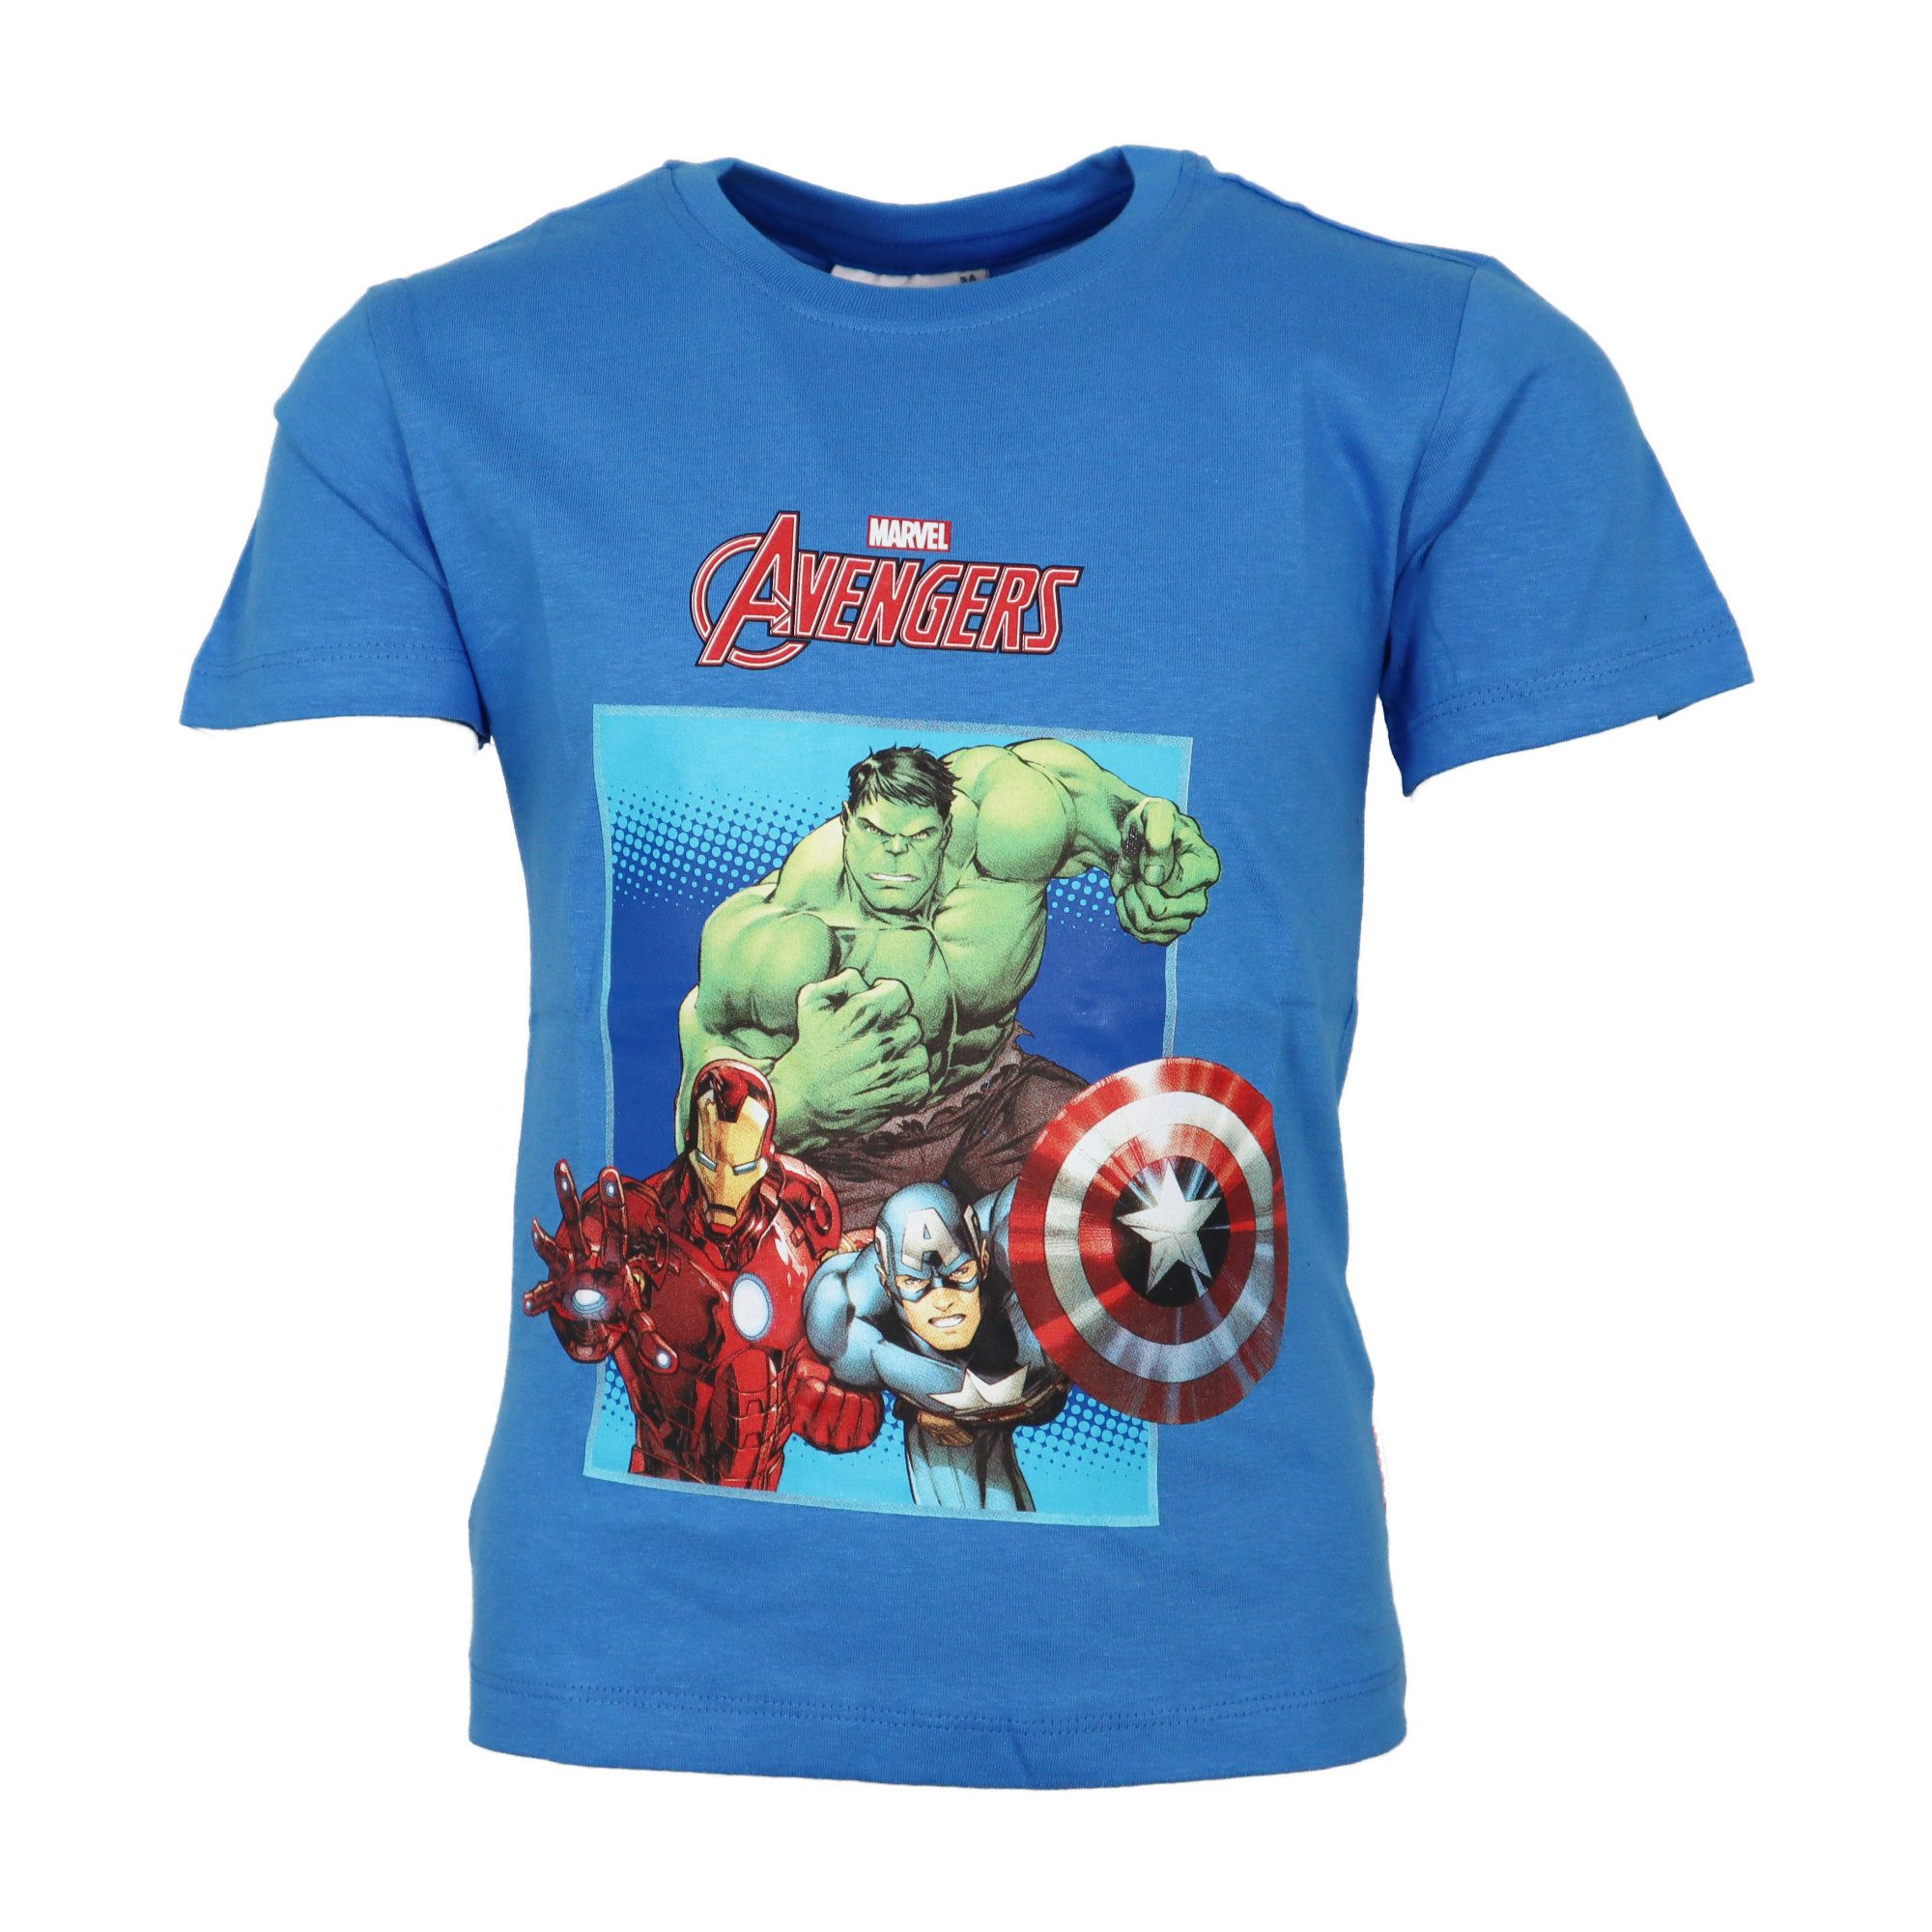 MARVEL Print-Shirt Marvel Avengers Kinder Jungen T-Shirt kurzarm Shirt Gr. 98 bis 128, Baumwolle